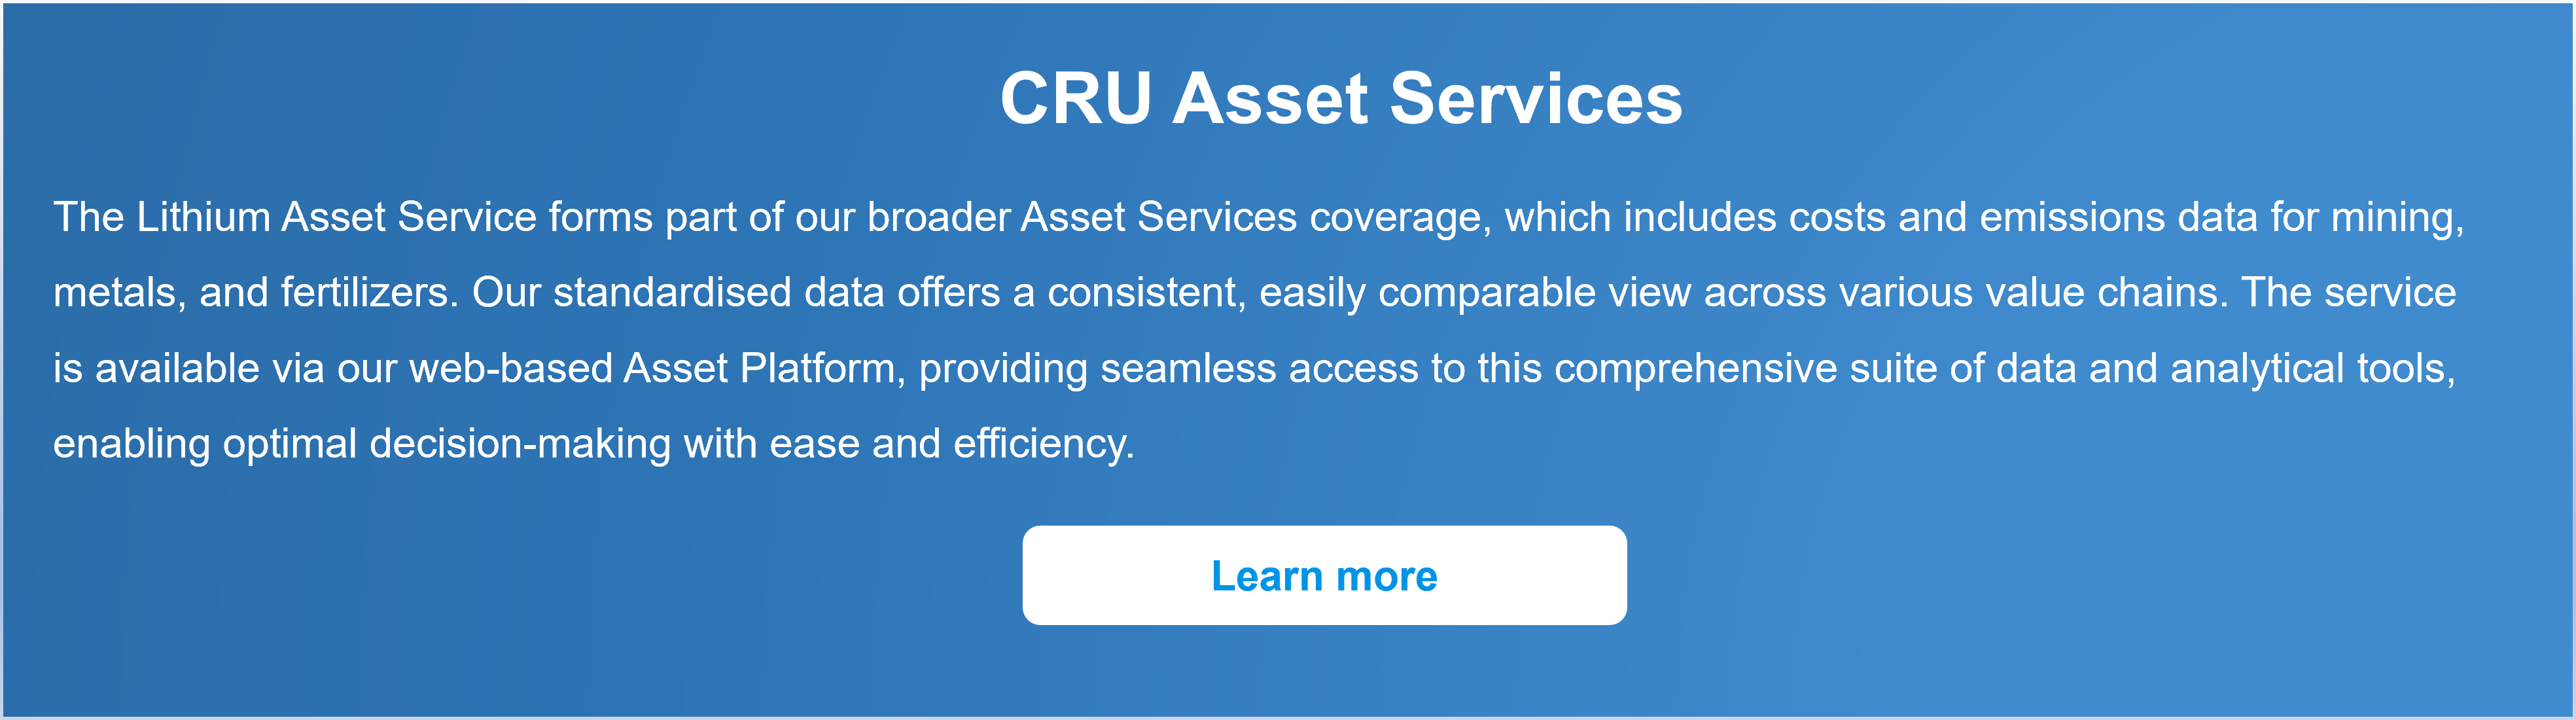 CRU Asset Services